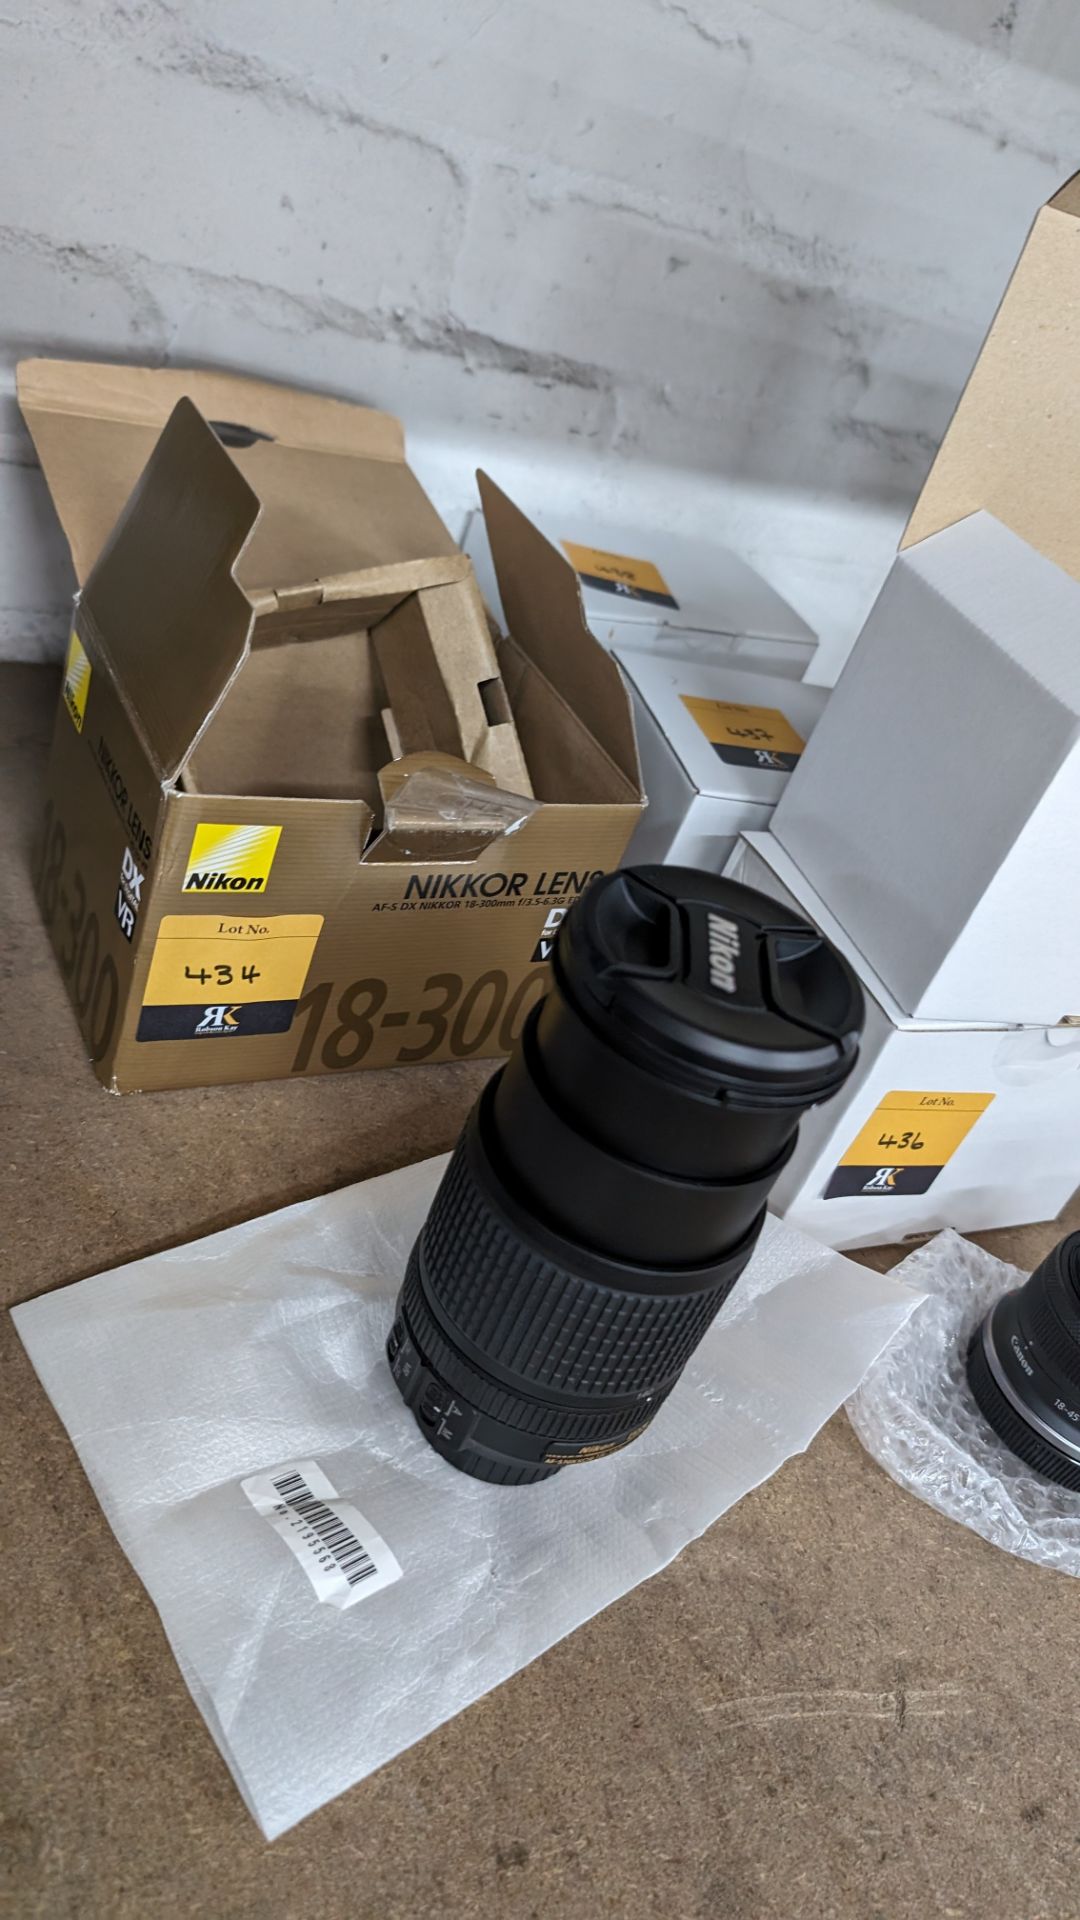 Nikon Nikkor lens AF-S DX Nikkor 18-140mm 1:3.5-5.6G ED VR - Image 3 of 13